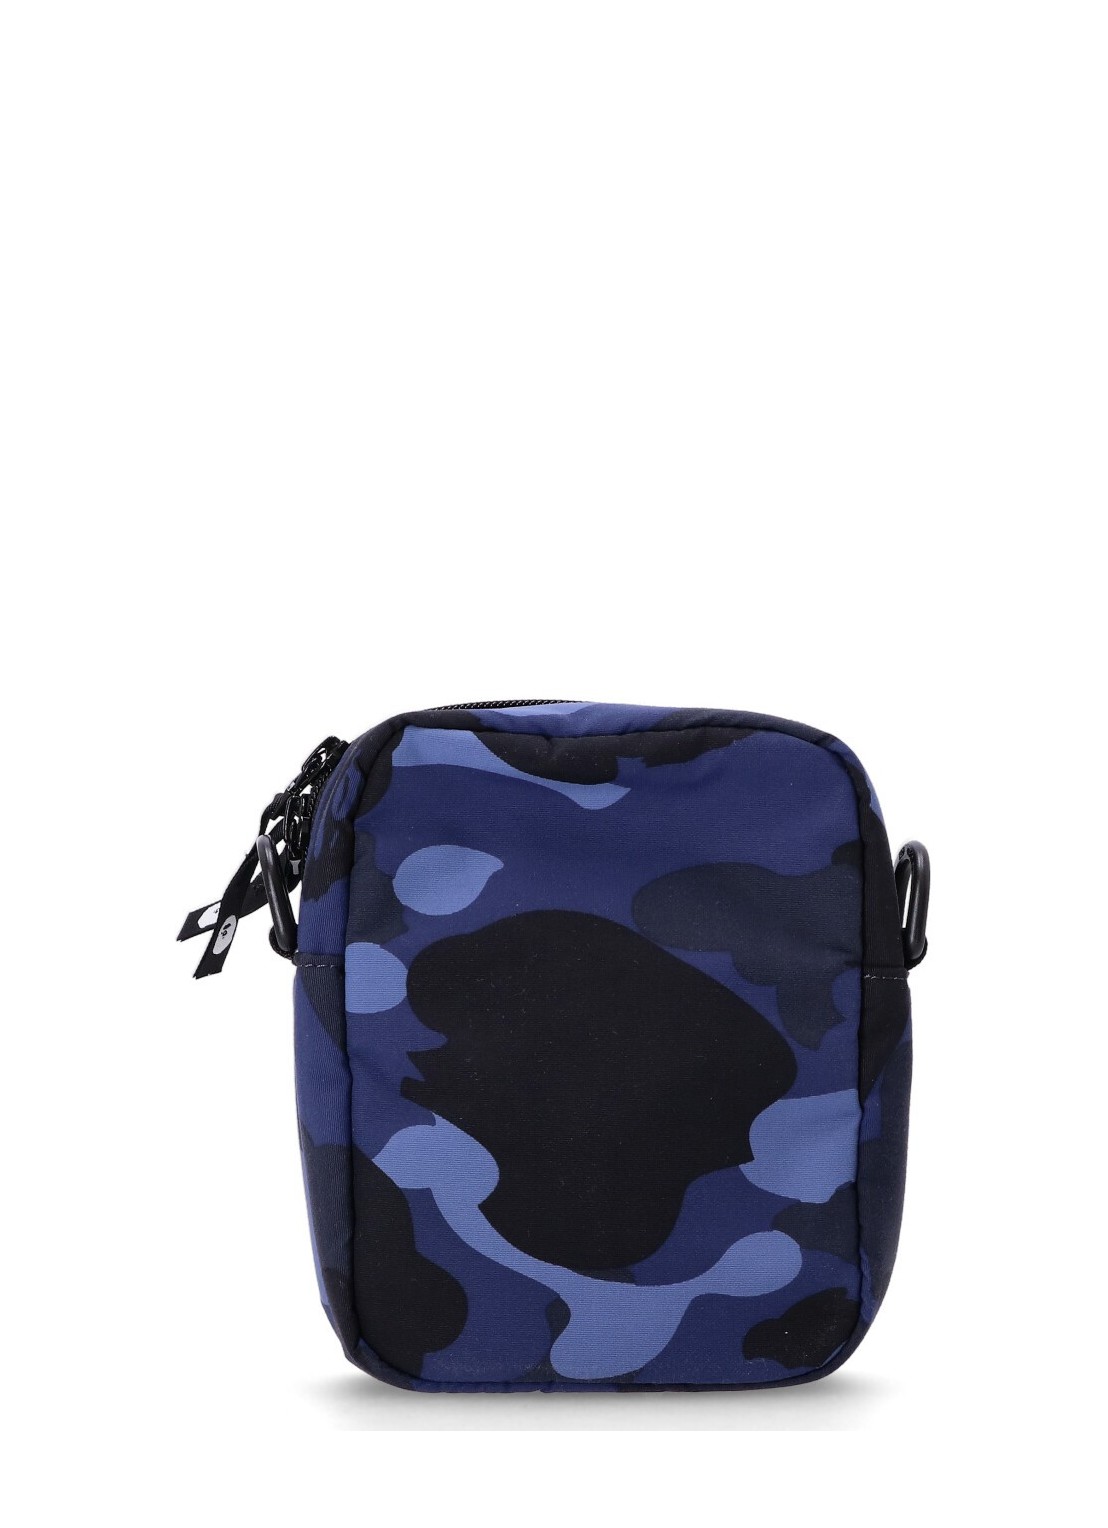 Bape Color Camo Mini Shoulder Bag